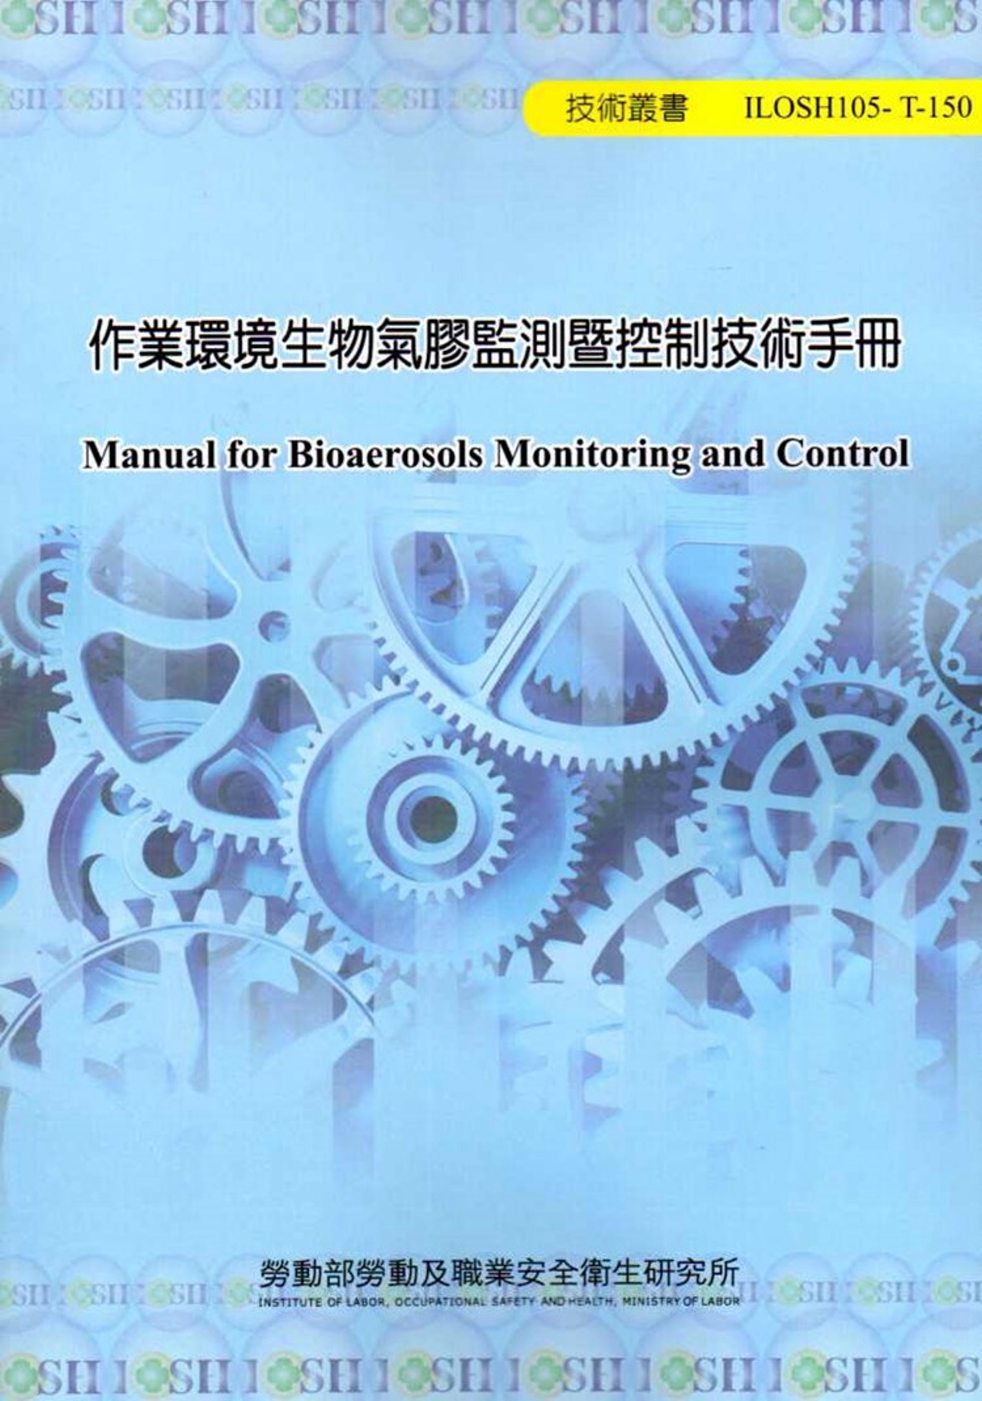 作業環境生物氣膠監測暨控制技術手冊